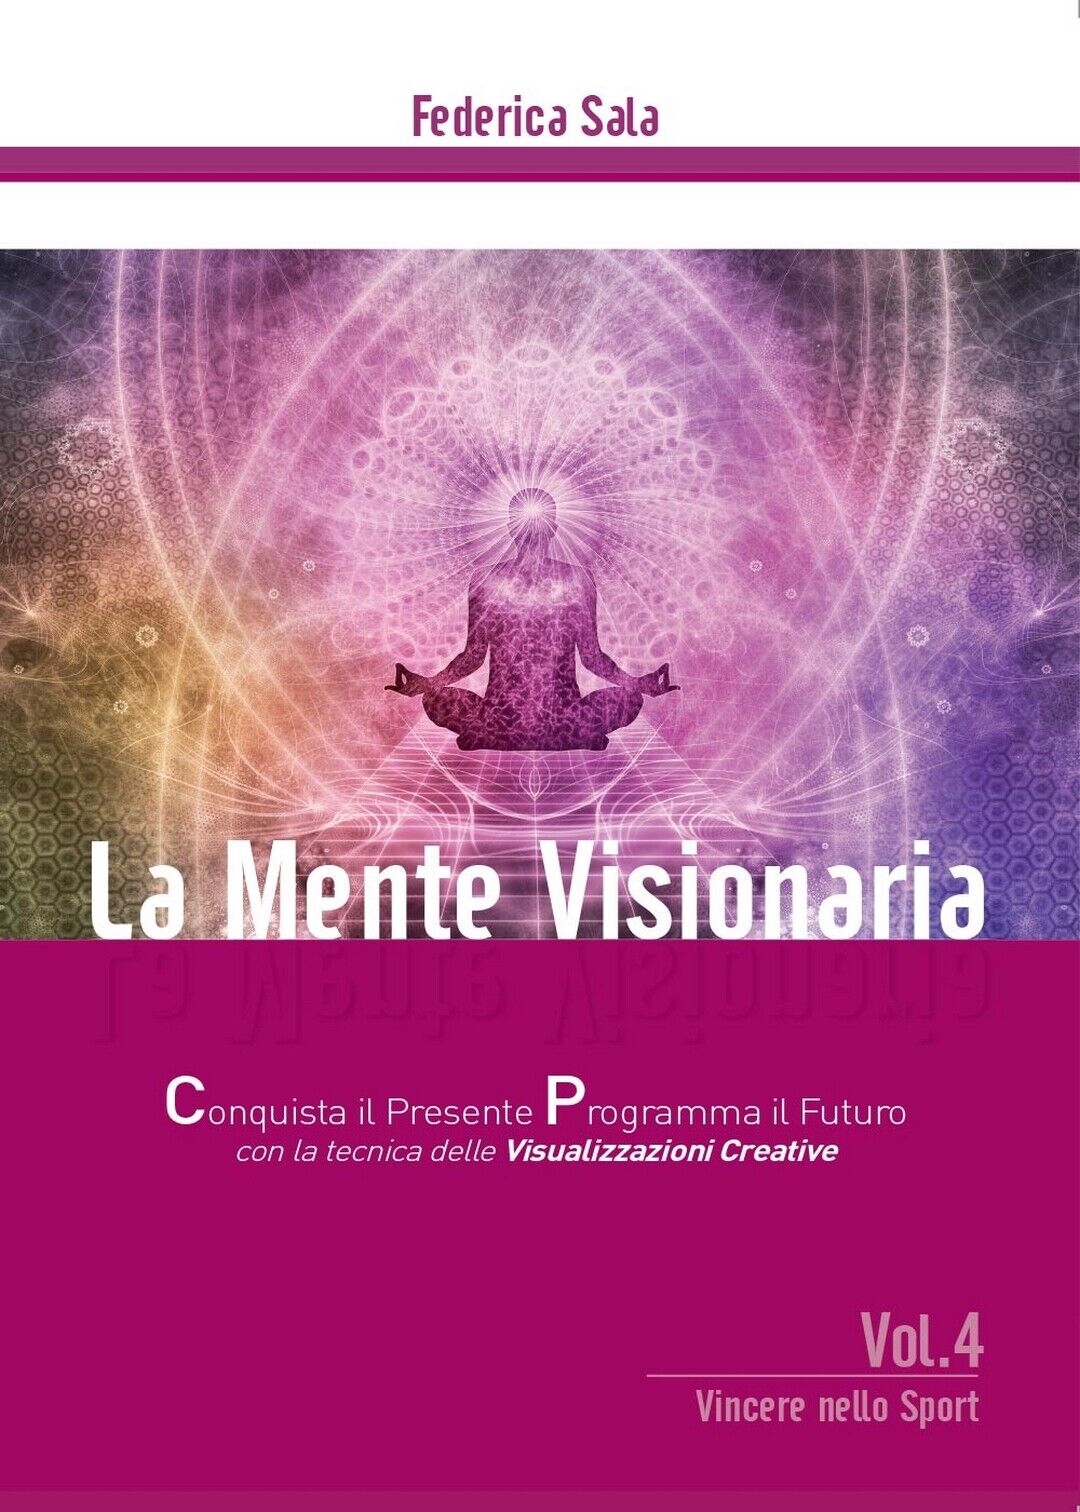 La Mente Visionaria Vol. 4 Vincere nello Sport, Federica Sala,  2016,  Youcanp.